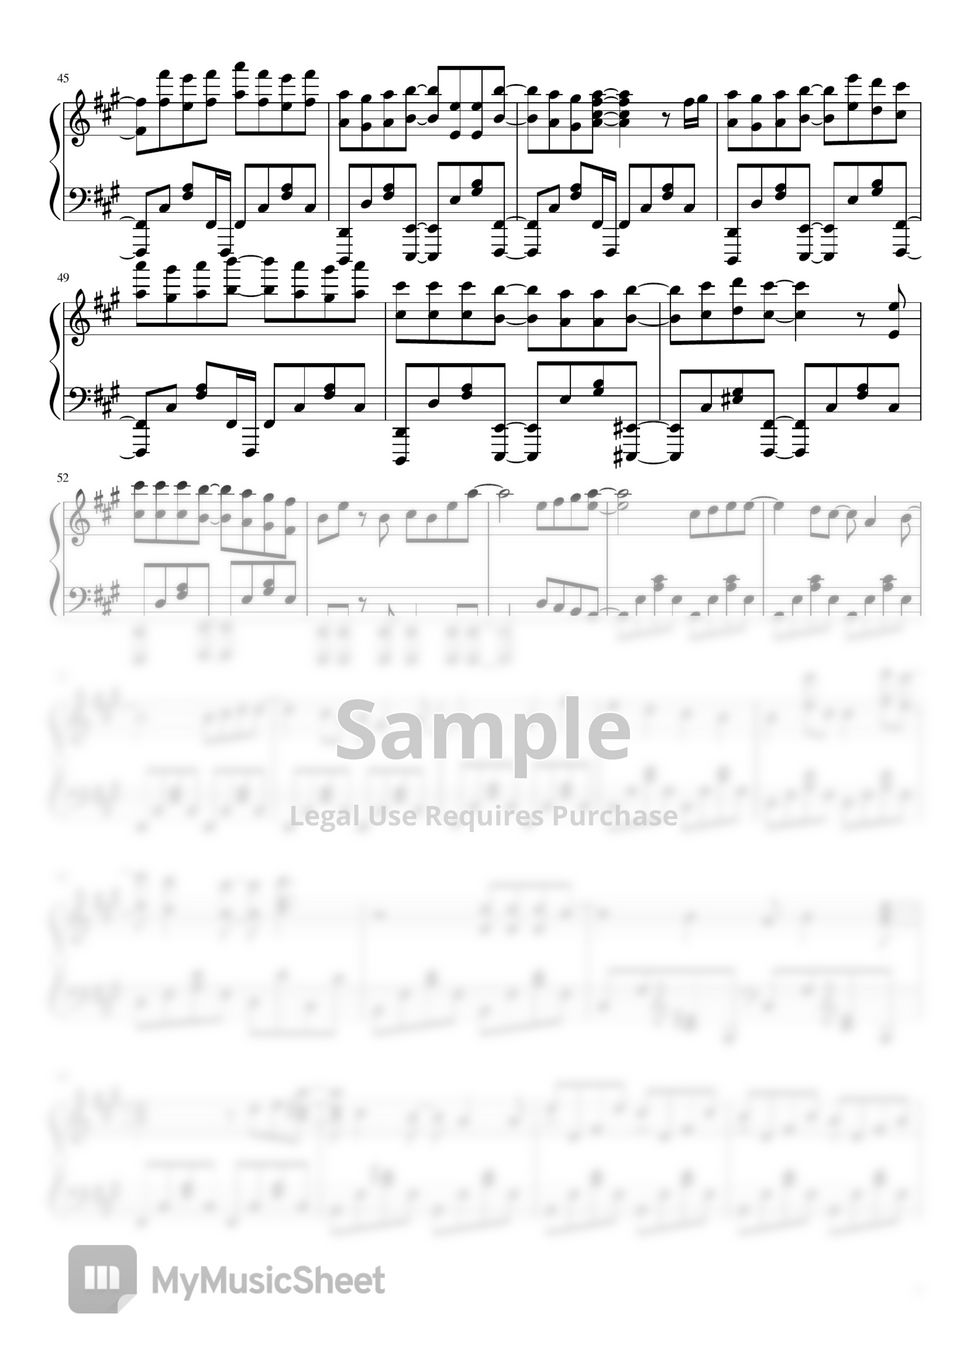 Hikaru Nara - Shigatsu wa - DucNghia's Piano - Sheet Music